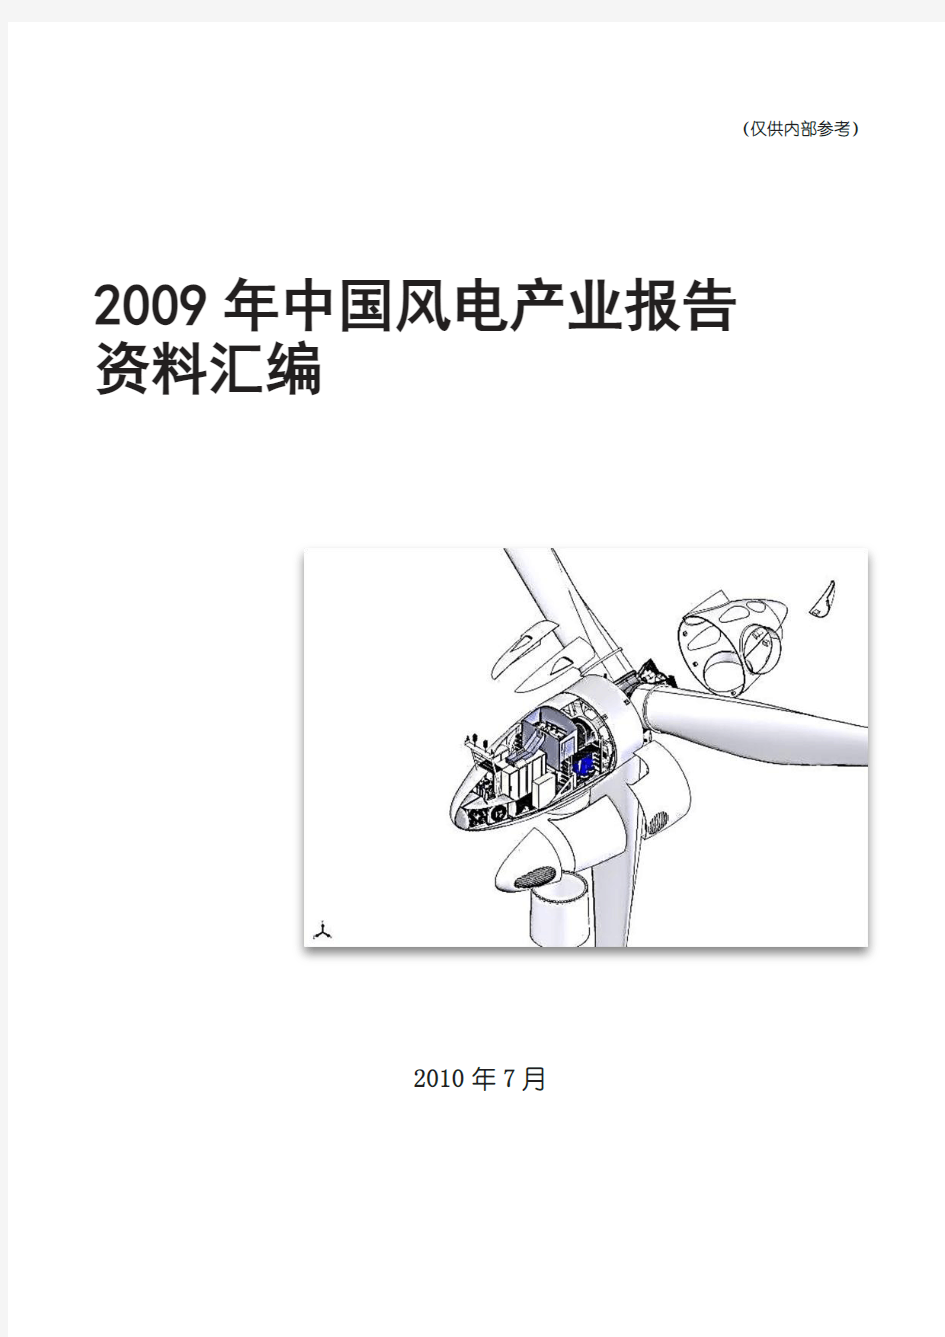 2009年中国风电产业报告资料汇编